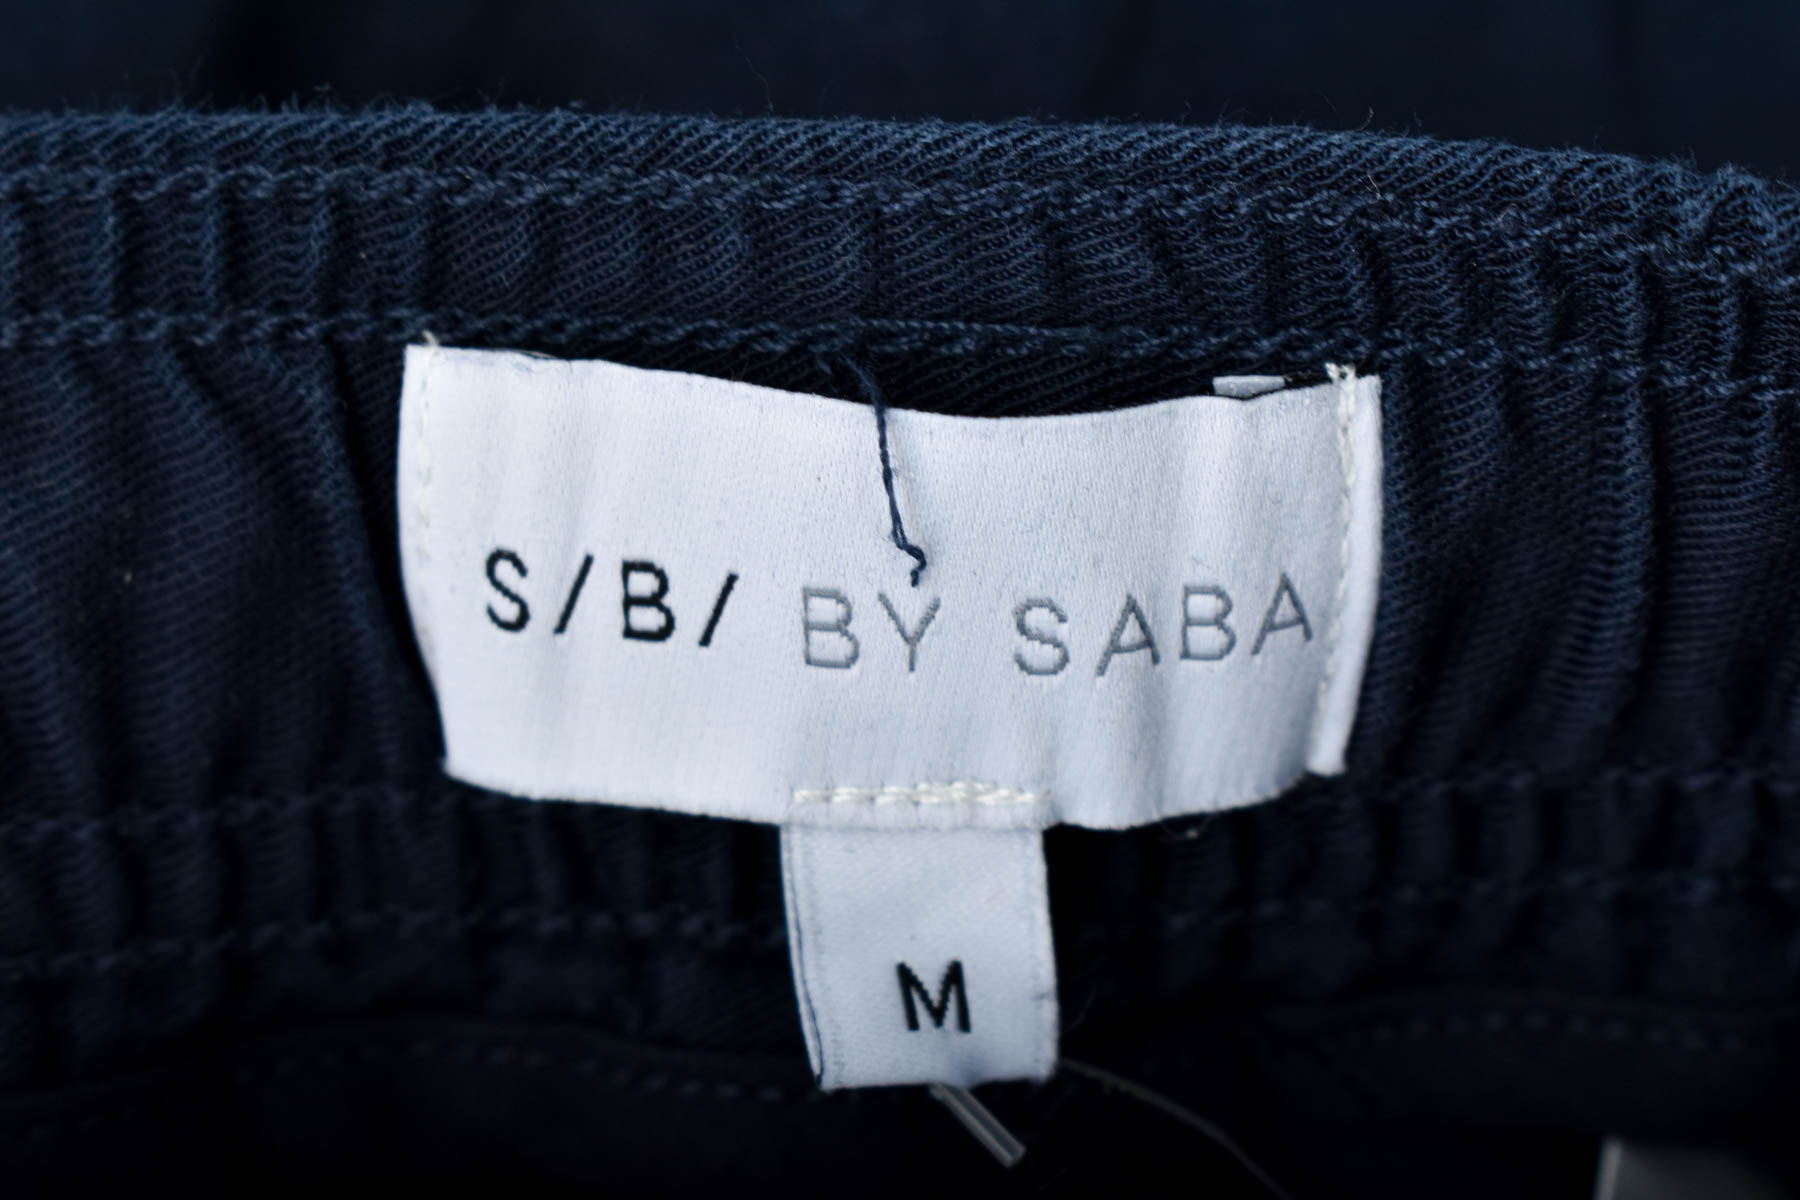 Męskie spodnie - S/B/ BY SABA - 2